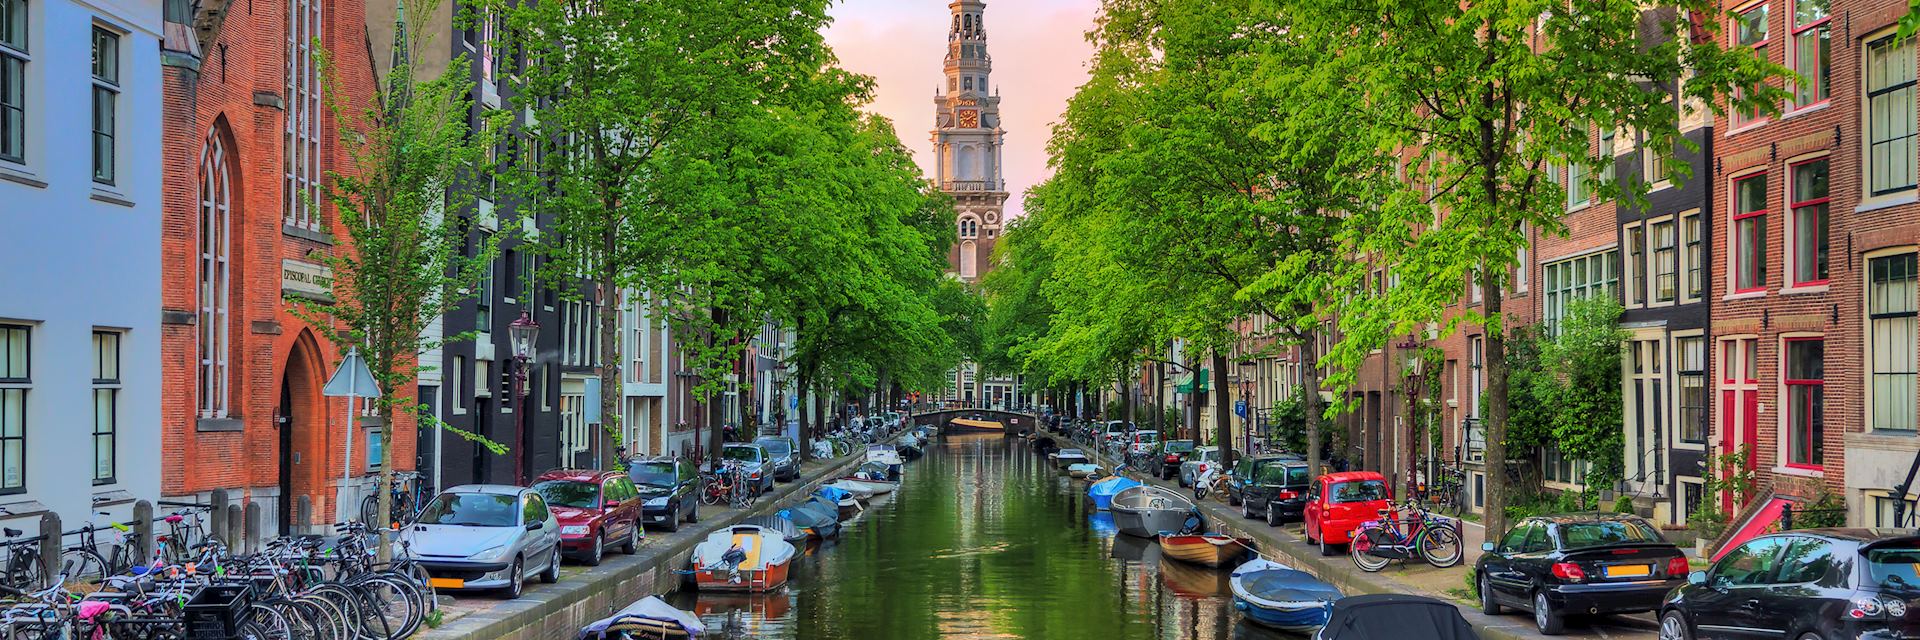 Groenburgwal Canal, Amsterdam